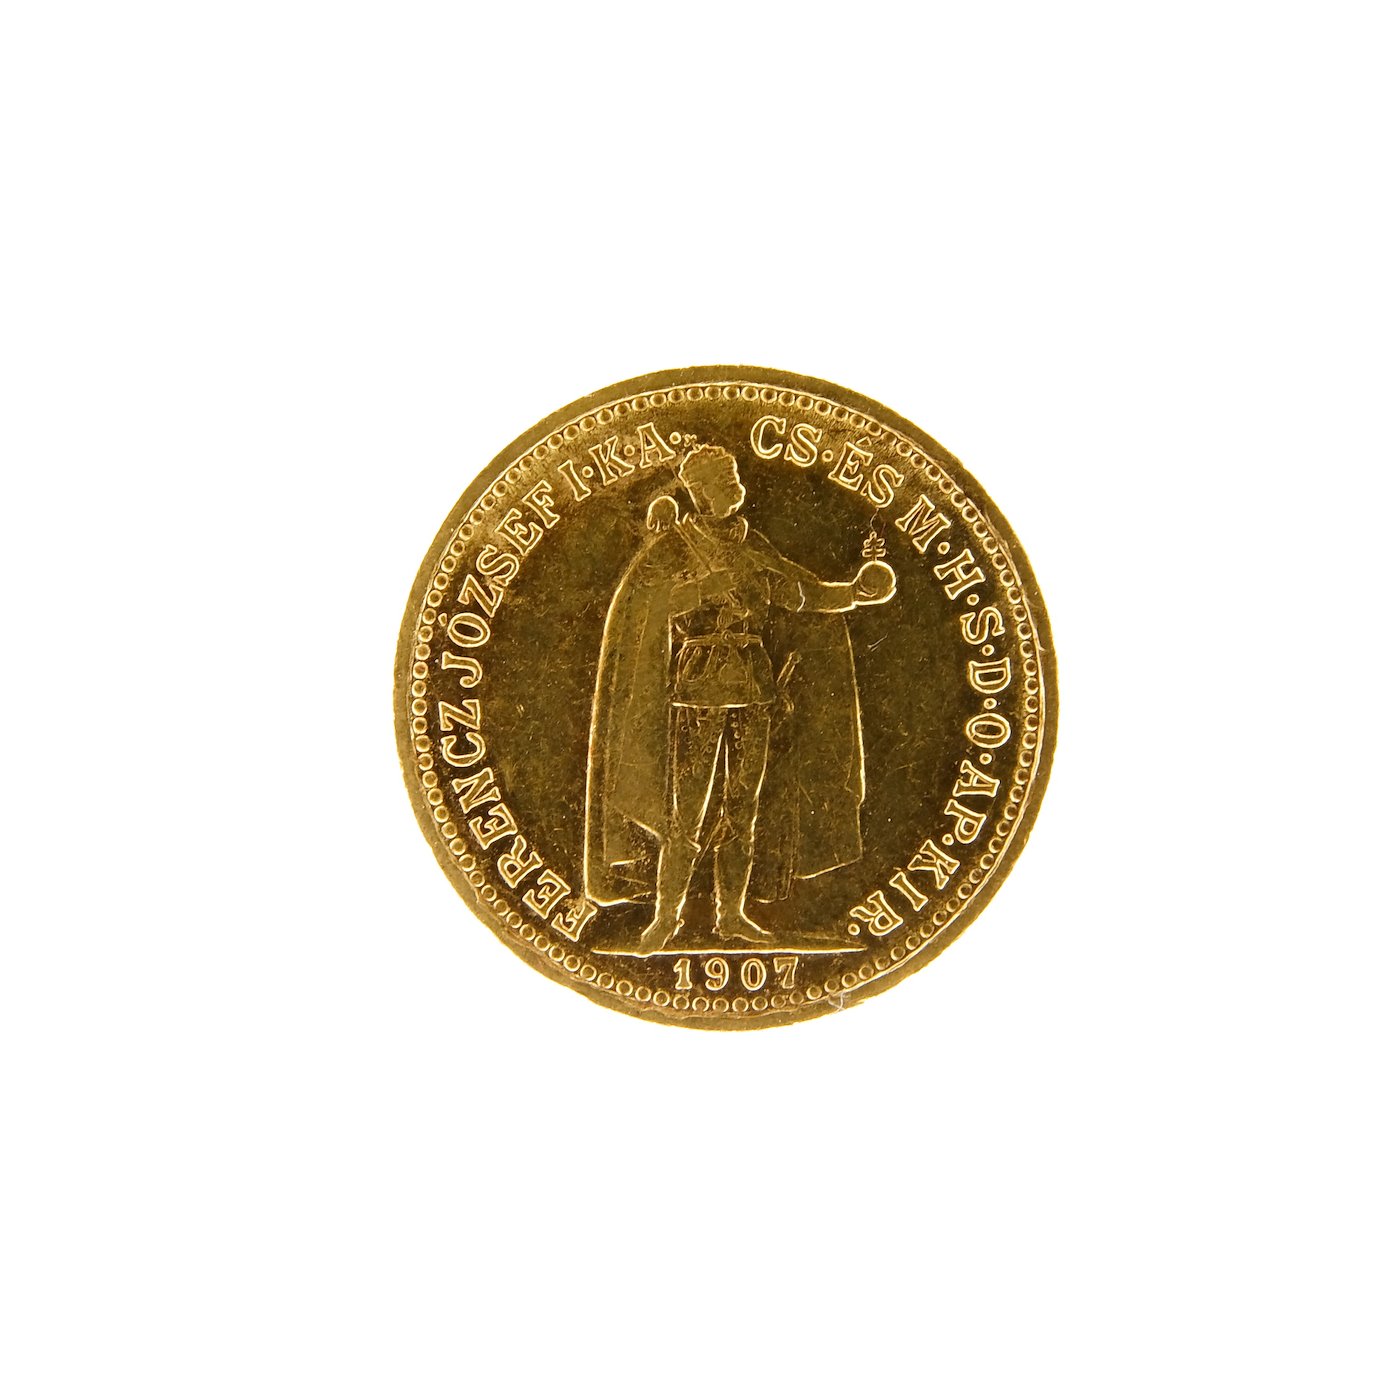 Mince - Rakousko Uhersko zlatá 10 Koruna 1908 K.B. uherská. Zlato 900/1000, hrubá hmotnost mince 3,387g